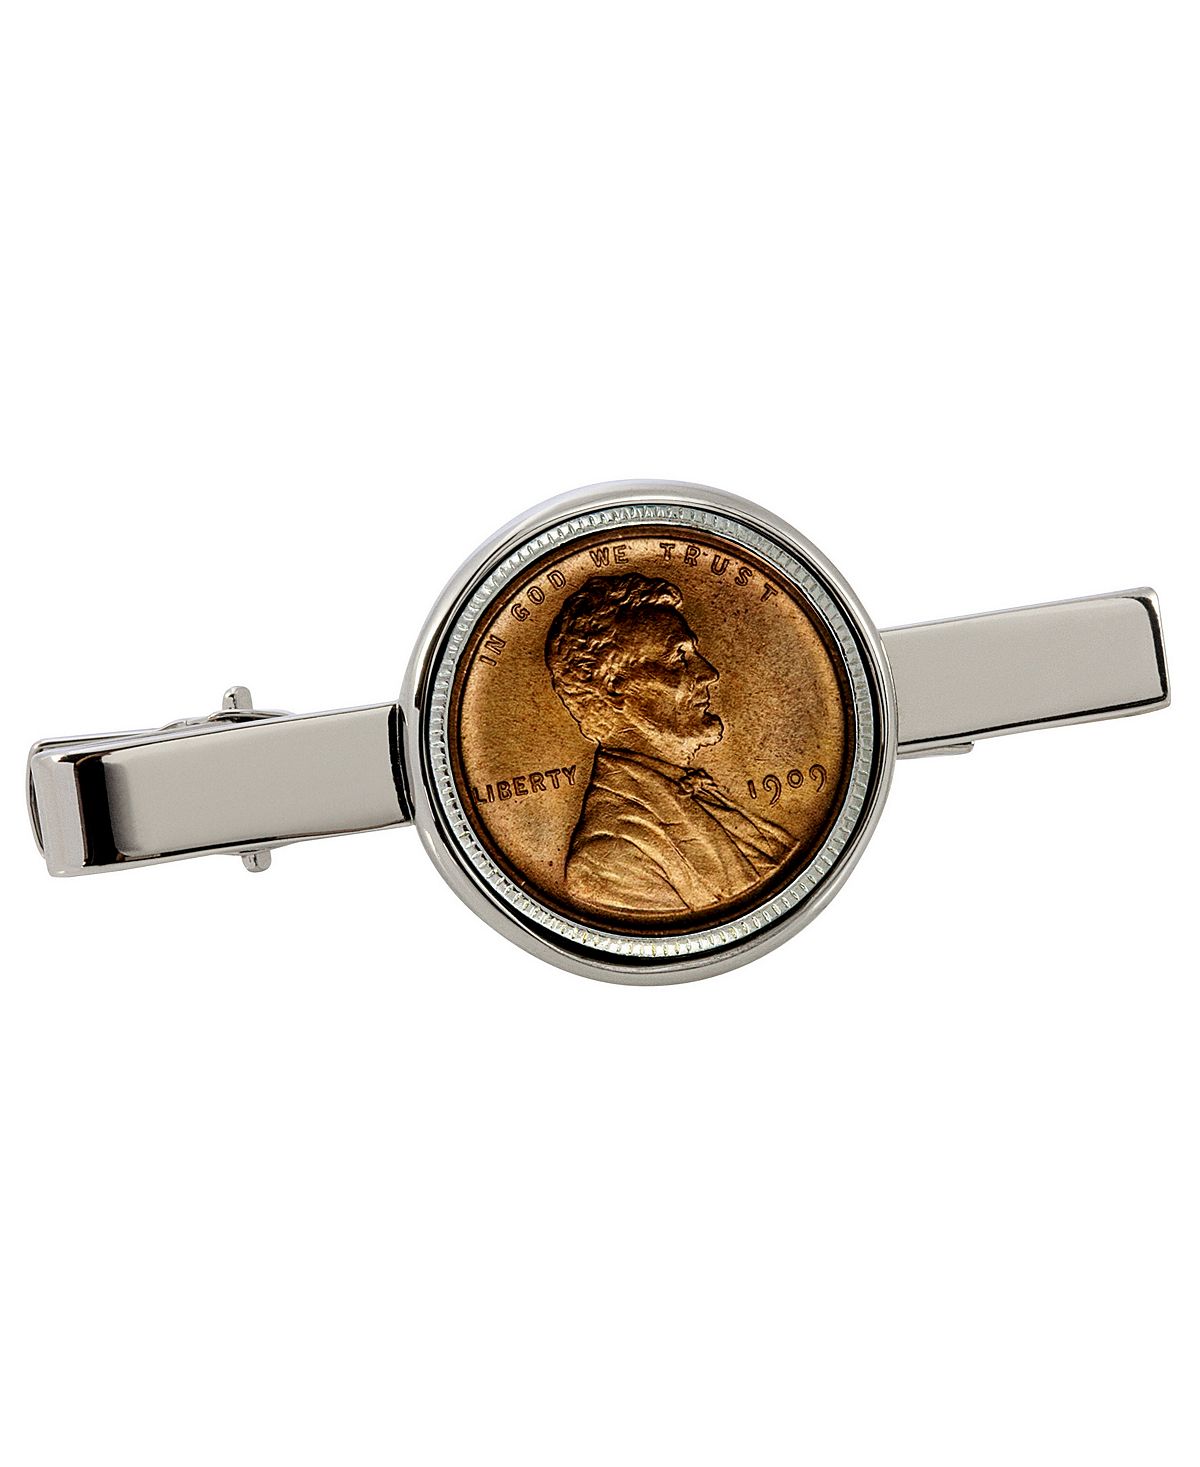 Зажим для галстука для монеты «Линкольн Пенни» первого года выпуска 1909 года American Coin Treasures 1 trillion dollar coin gold plated collection metal coin silver coins